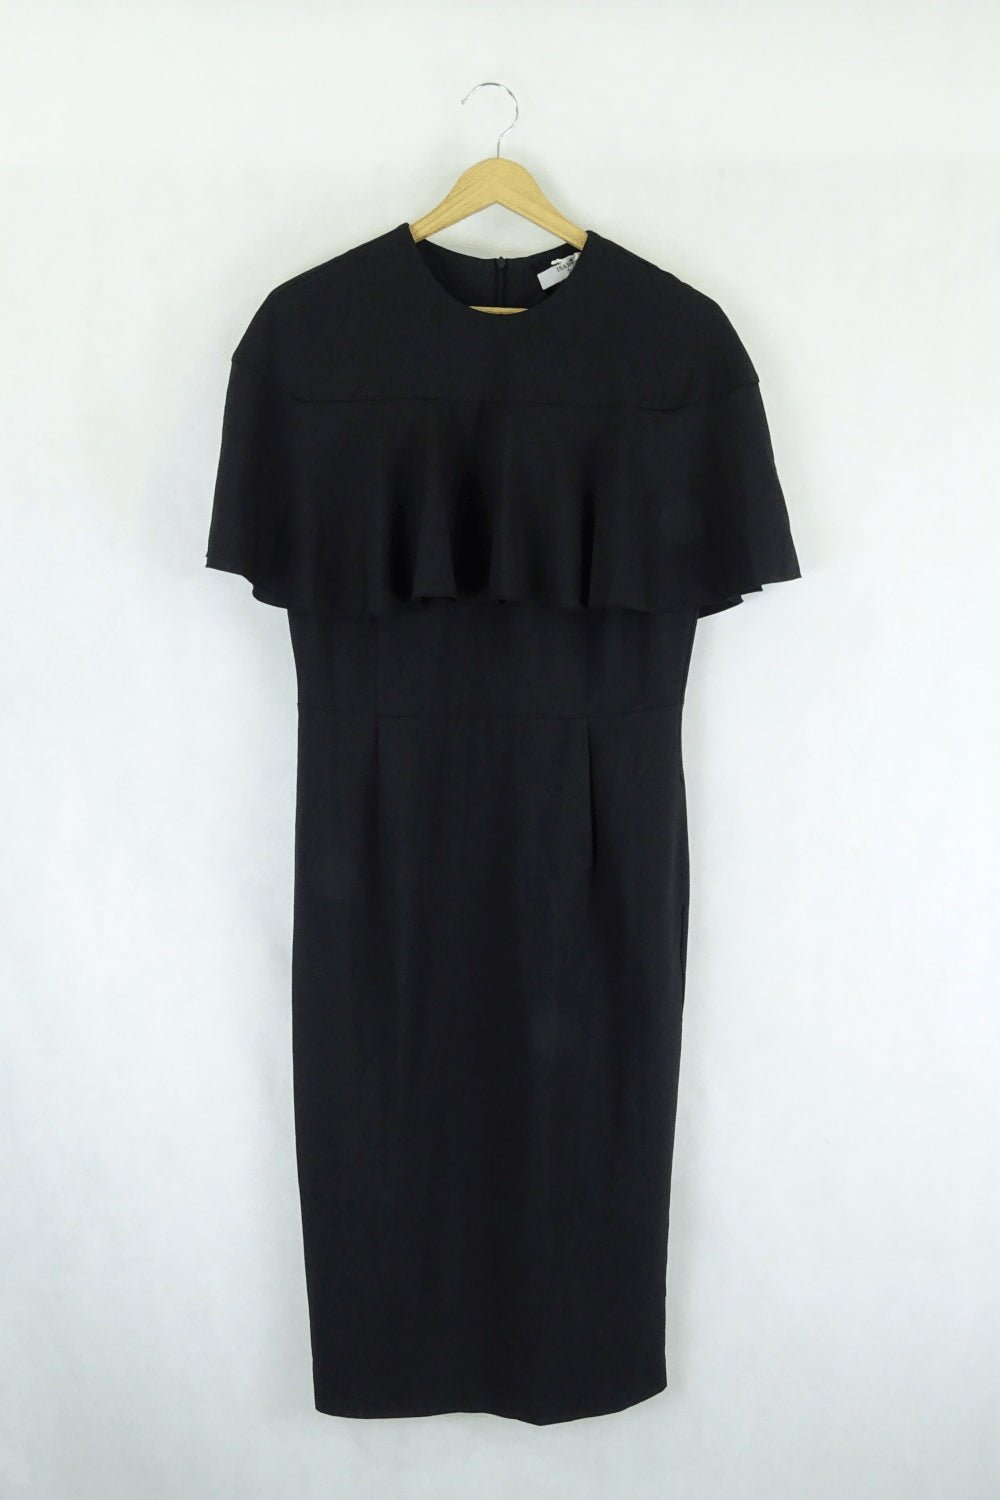 Isabel black dress 12